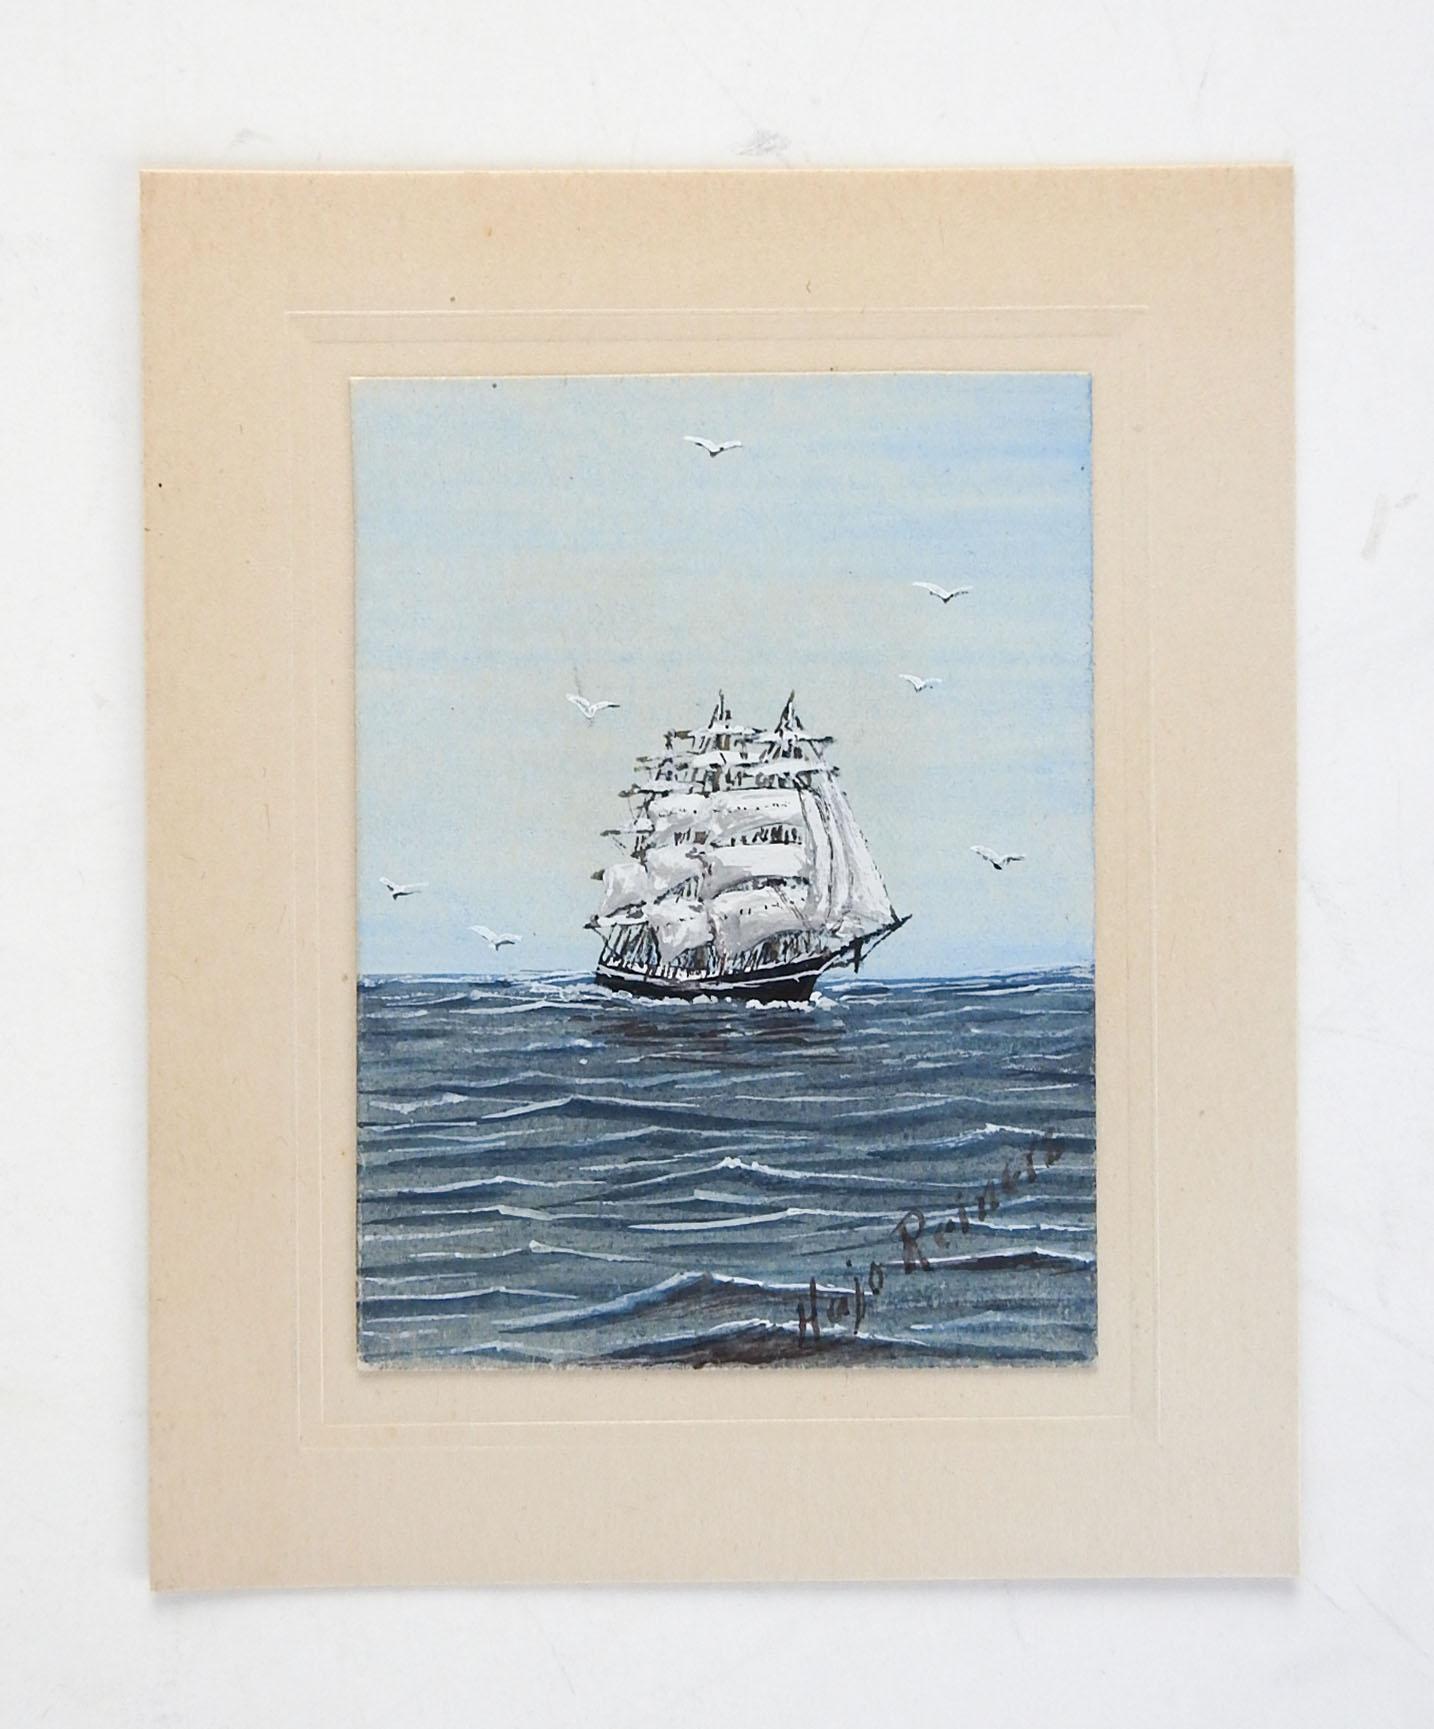 Miniatur-Aquarell auf Papier eines Segelschiffs von Hajo Reiners (20. Jahrhundert) Texas. Signiert unten rechts. Das Gemälde ist 2,25' x 3